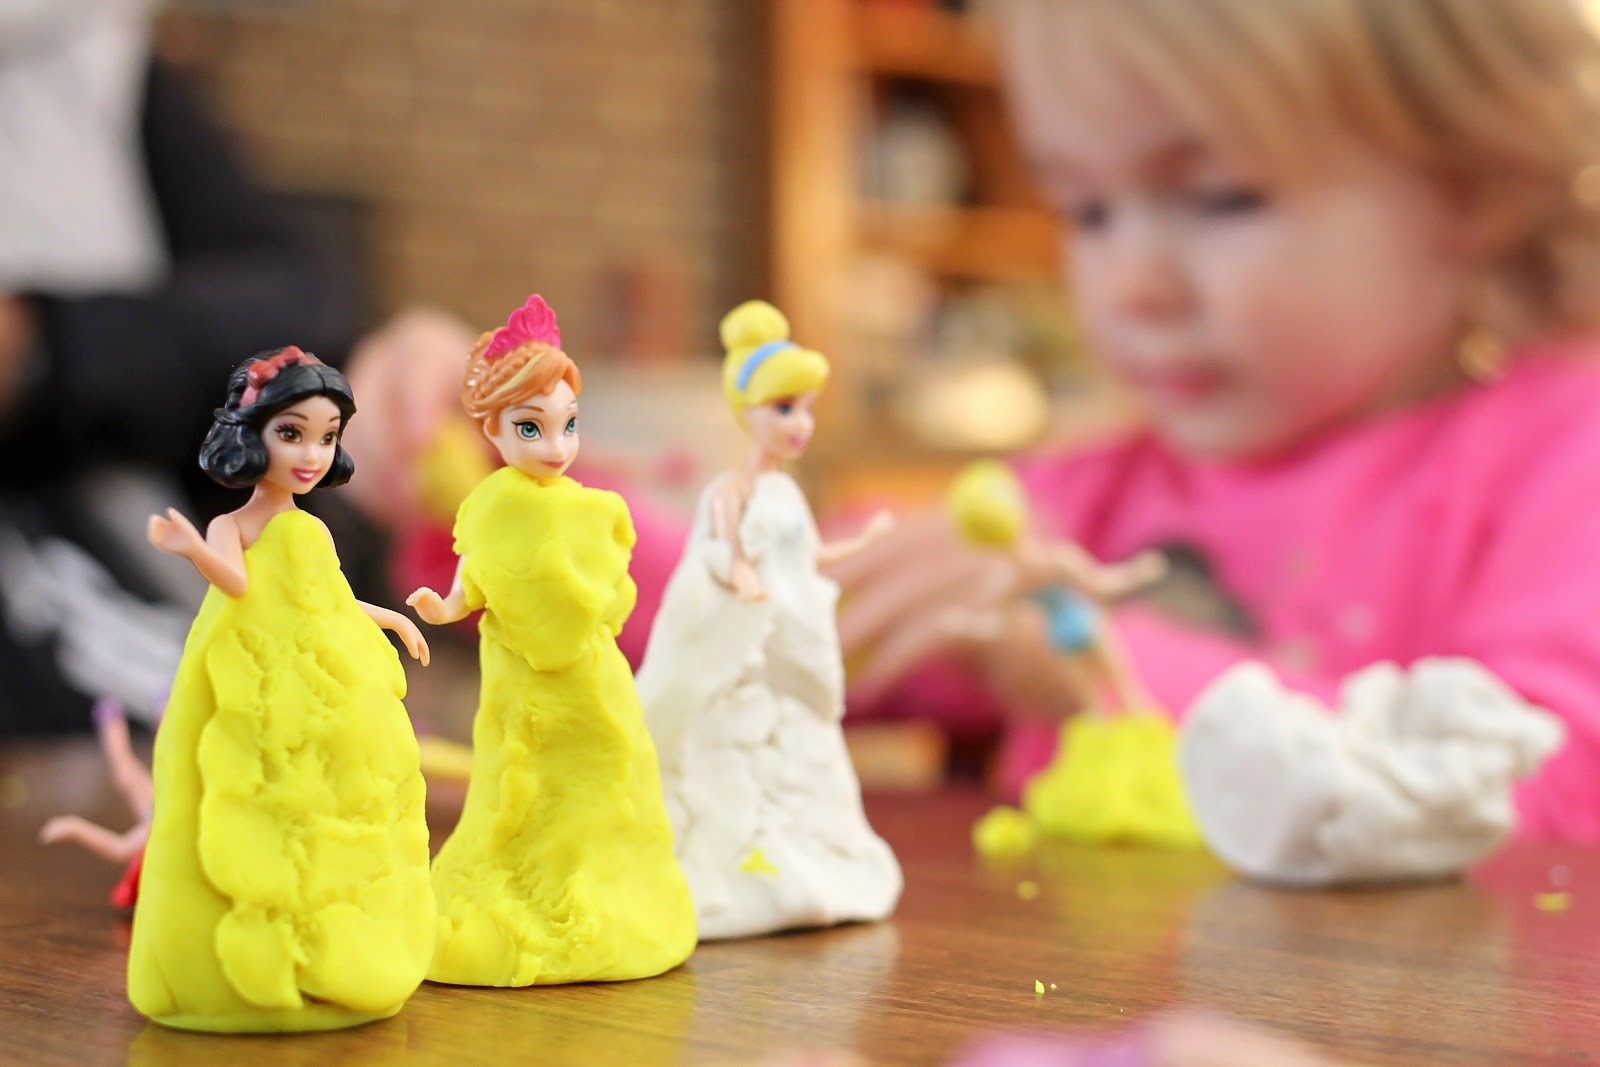 Girl making playdough dresses for her dolls